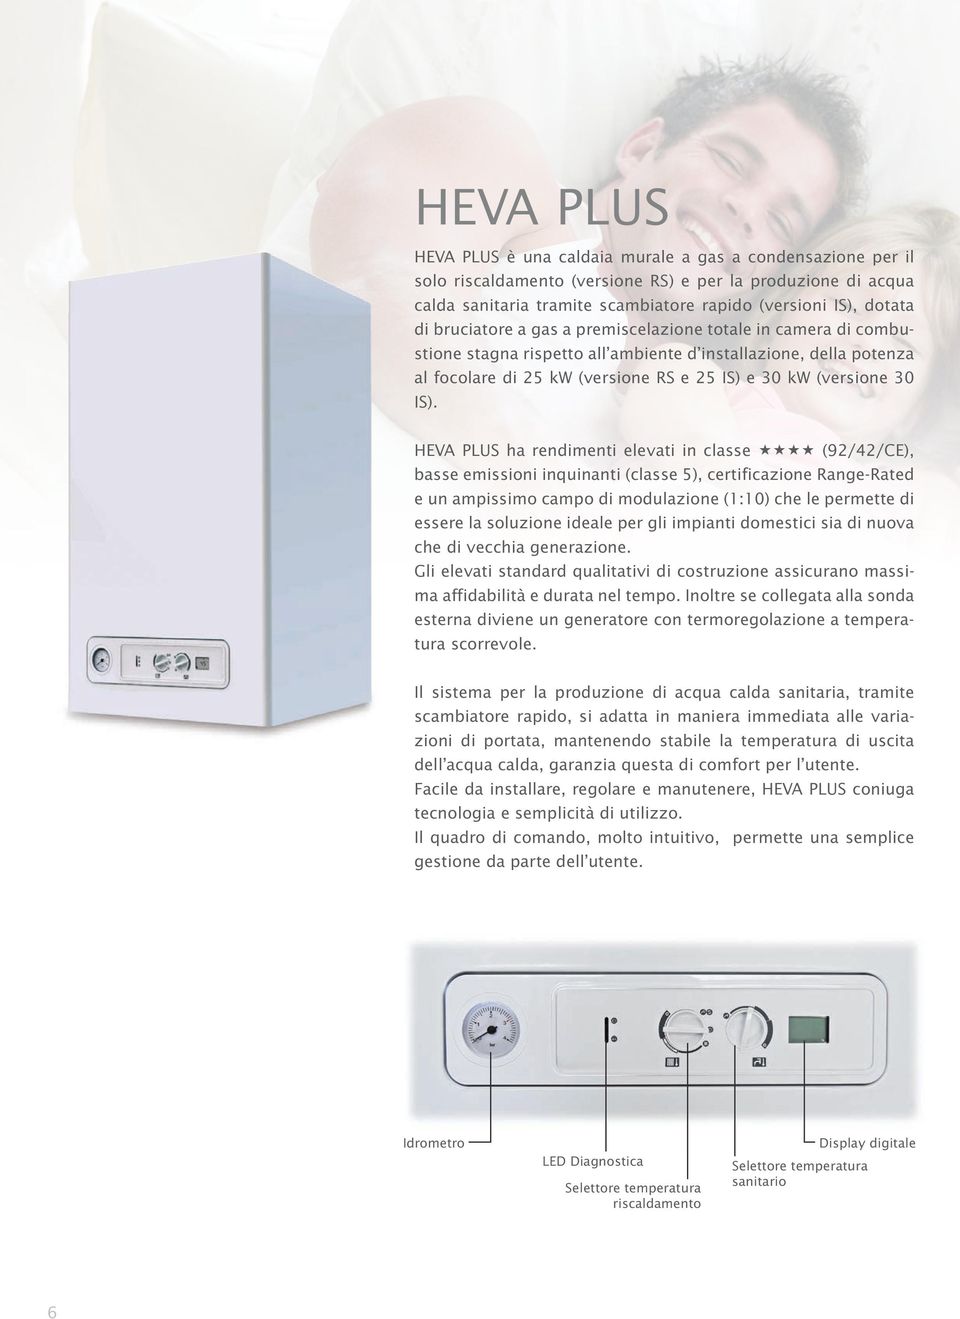 HEVA PLUS ha rendimenti elevati in classe (92/42/CE), basse emissioni inquinanti (classe 5), certificazione Range-Rated e un ampissimo campo di modulazione (1:10) che le permette di essere la